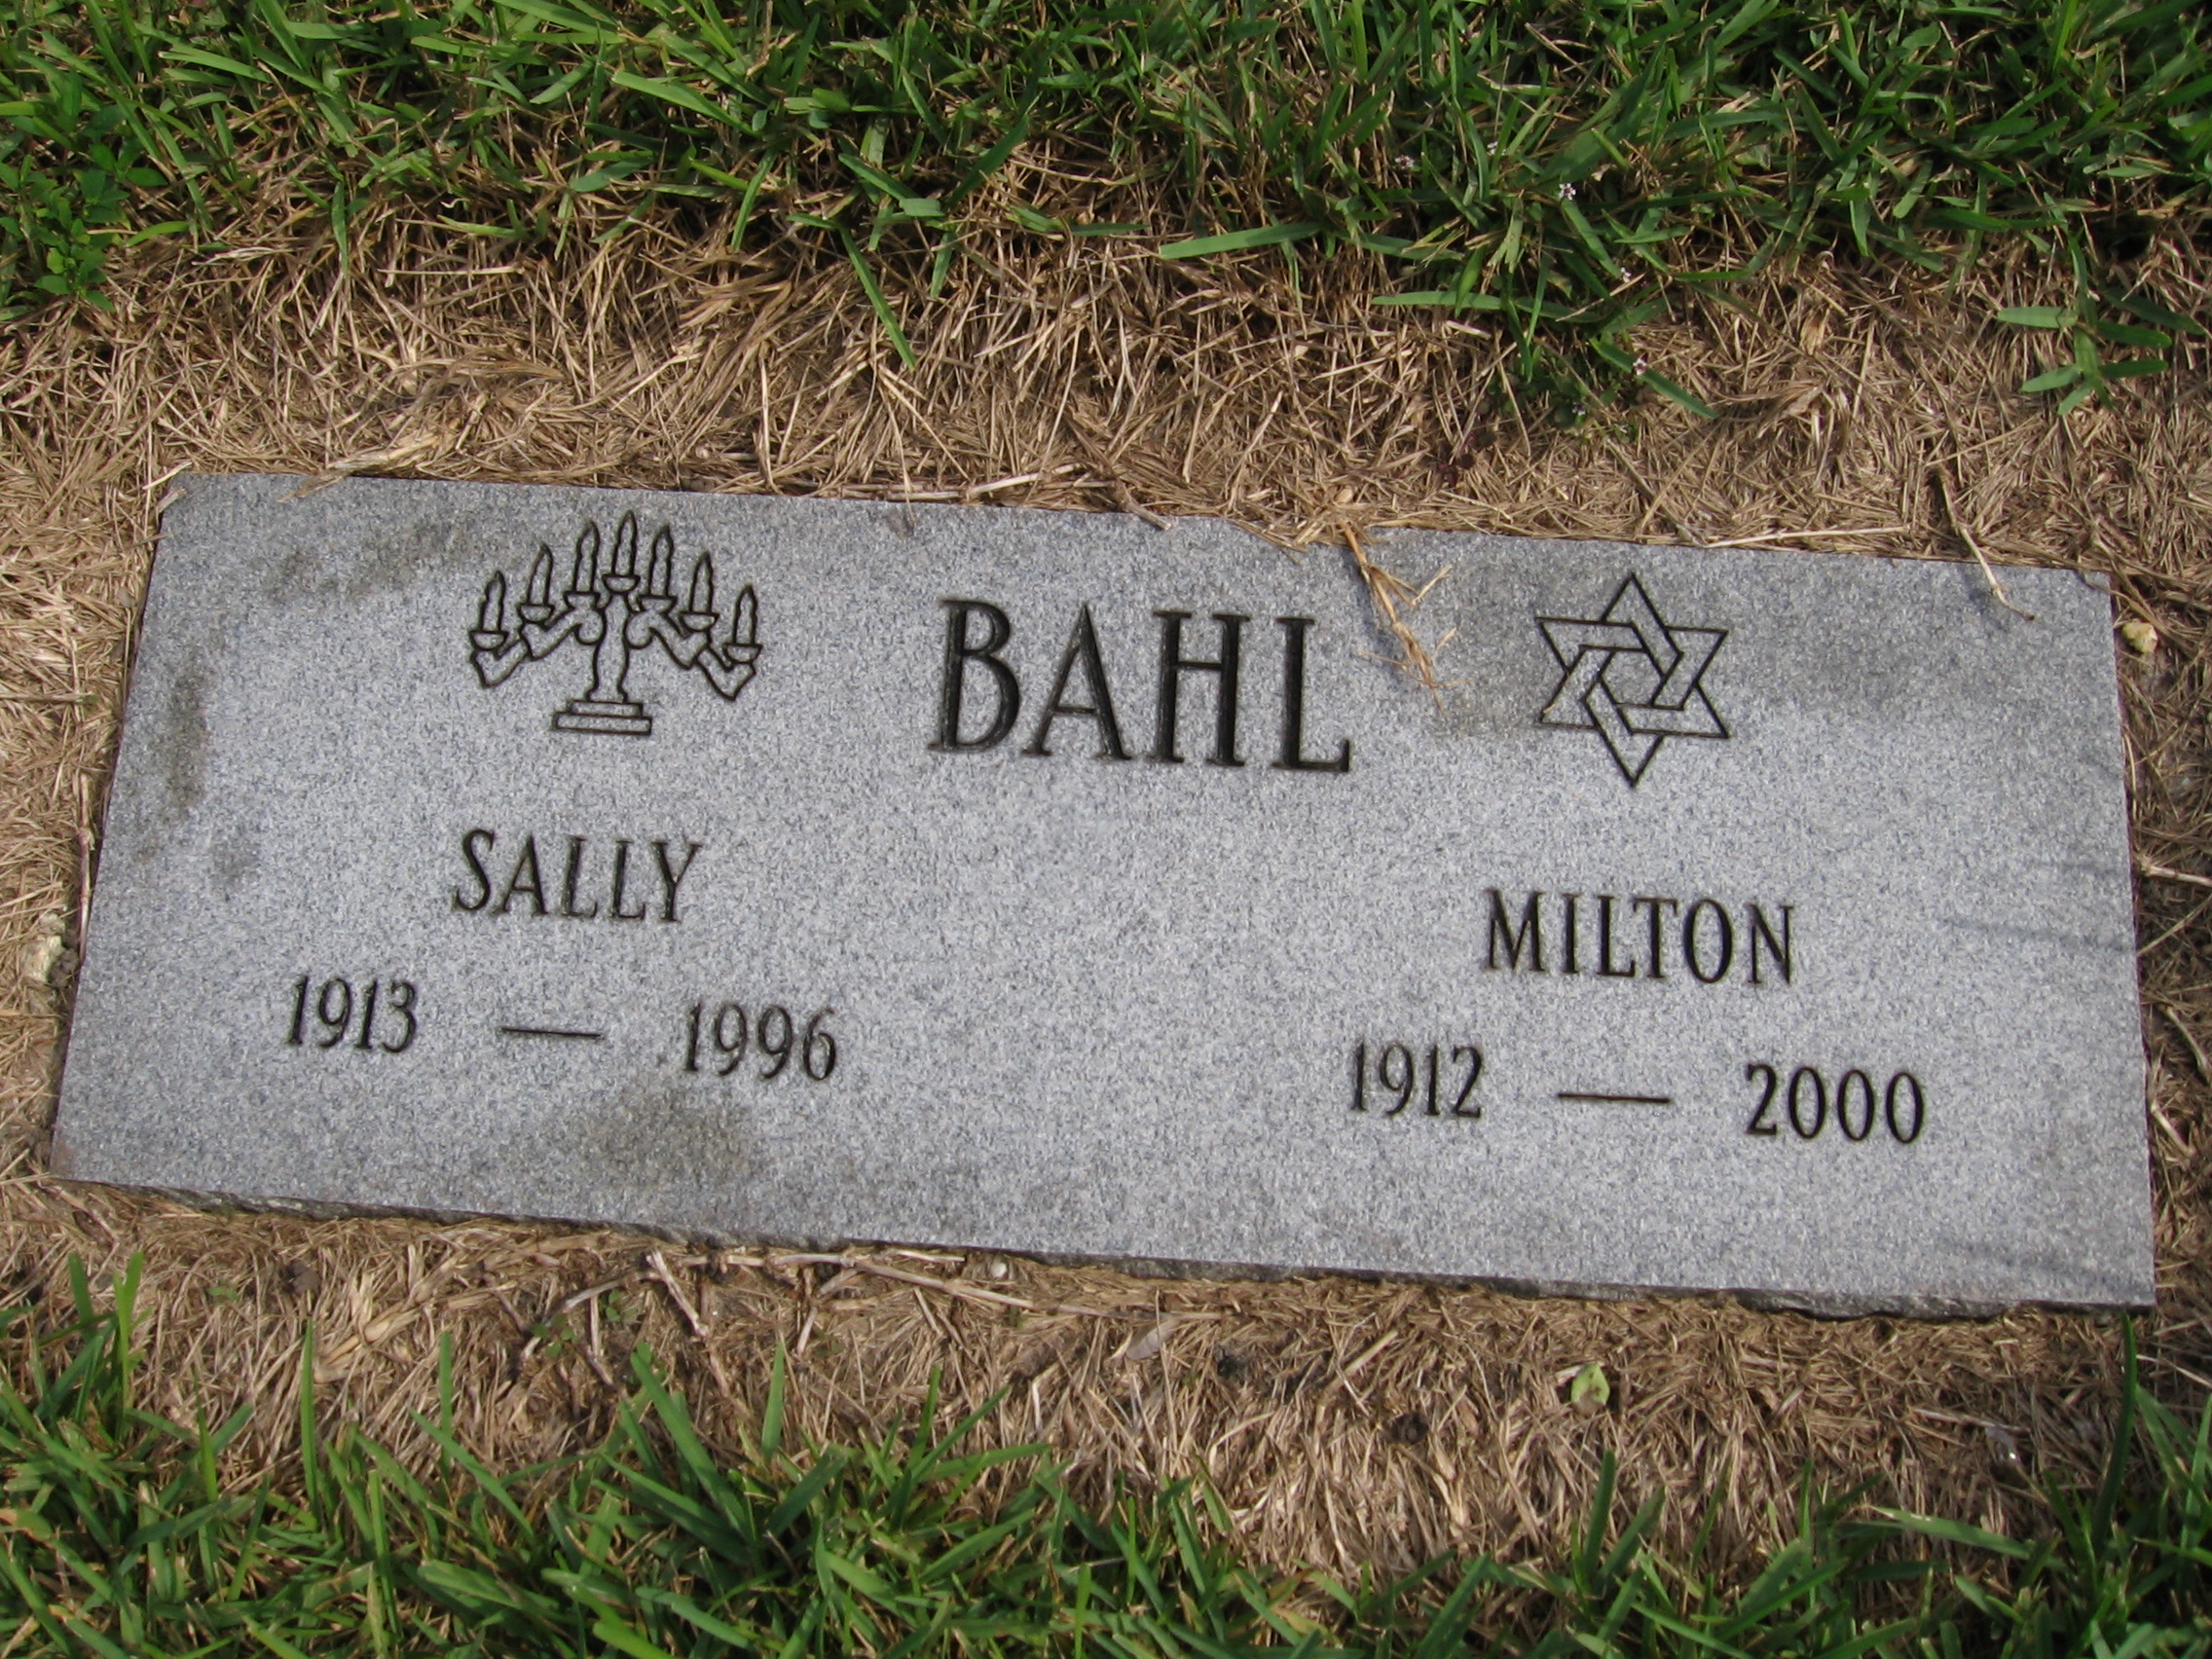 Sally Bahl